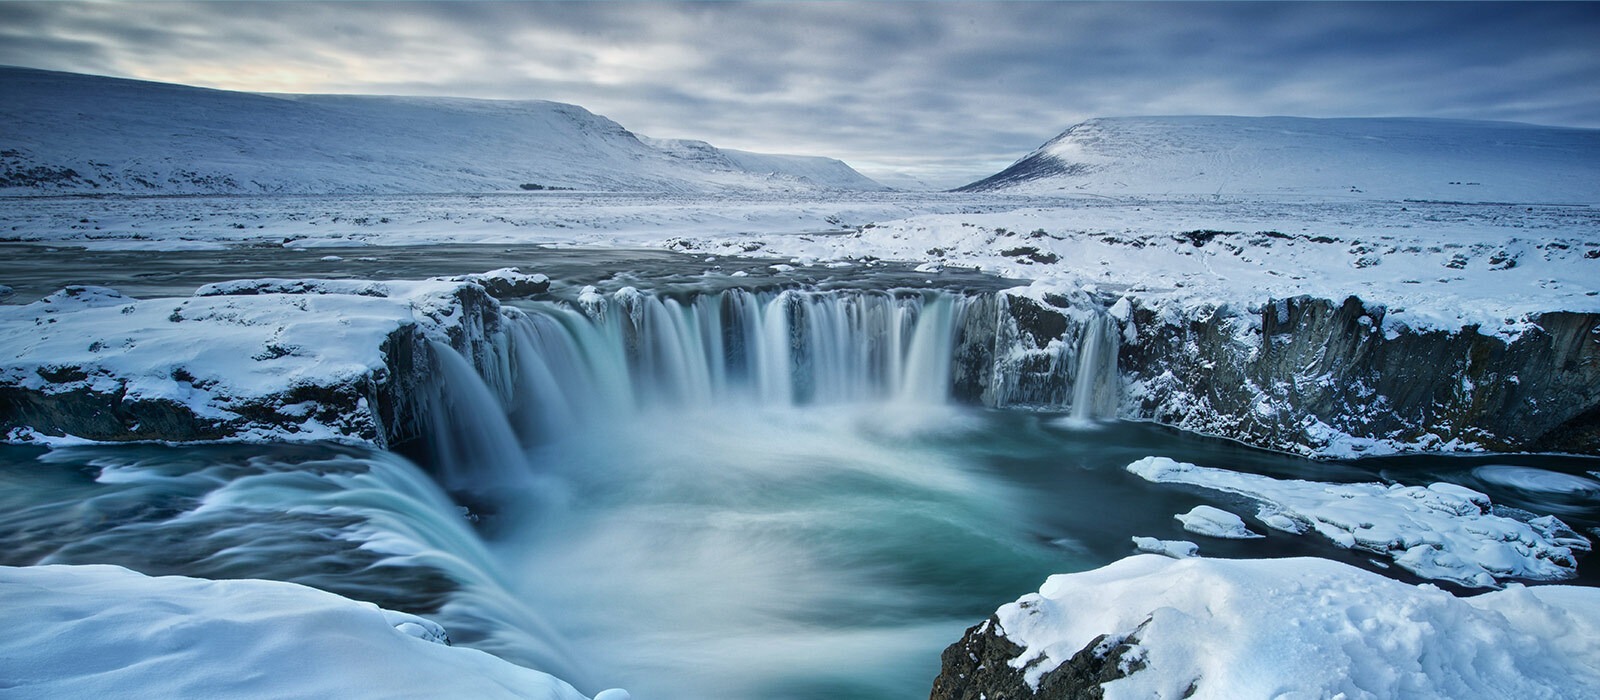 Islande en hiver